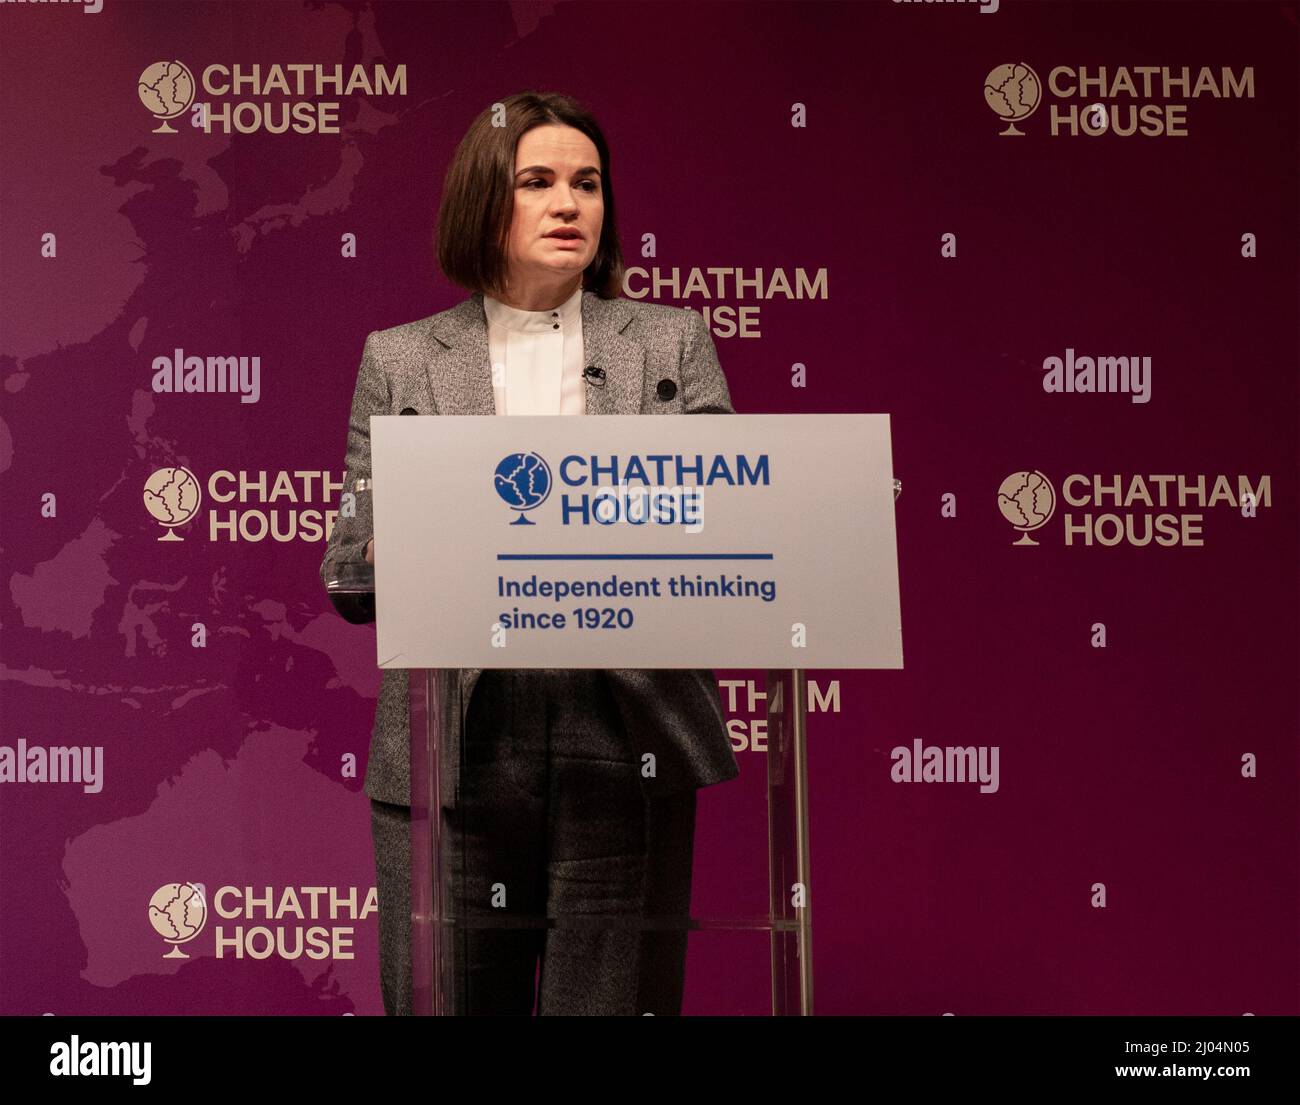 Sviatlana Tsikhanousakaya parla alla Chatham House, il Royal Institute of International Affairs di Londra; ha condotto alle elezioni in Bielorussia del 2020 Foto Stock